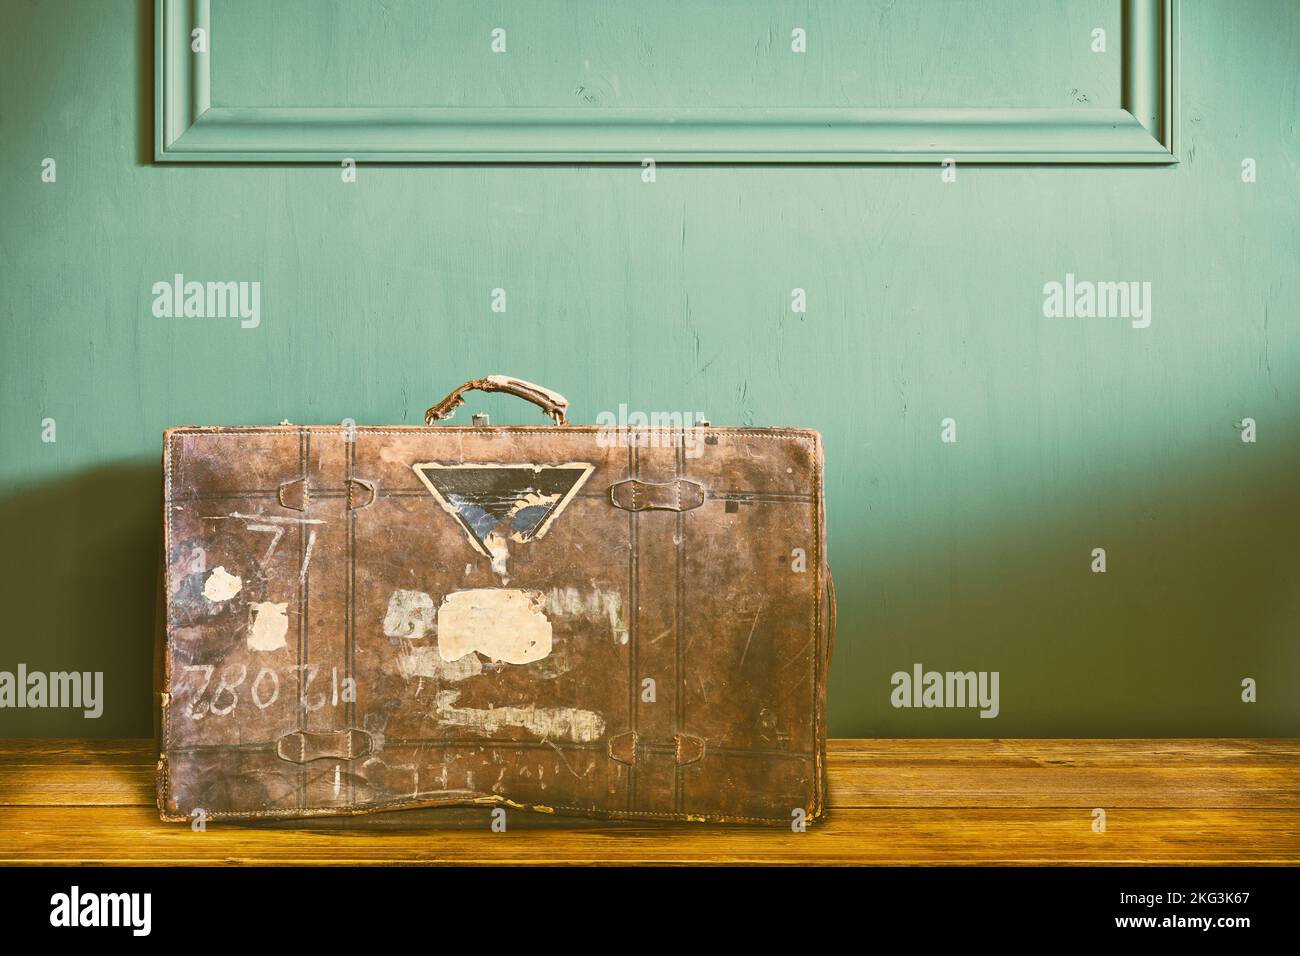 Immagine in stile retrò di una valigia da viaggio d'epoca intemperita in un vecchio soggiorno Foto Stock